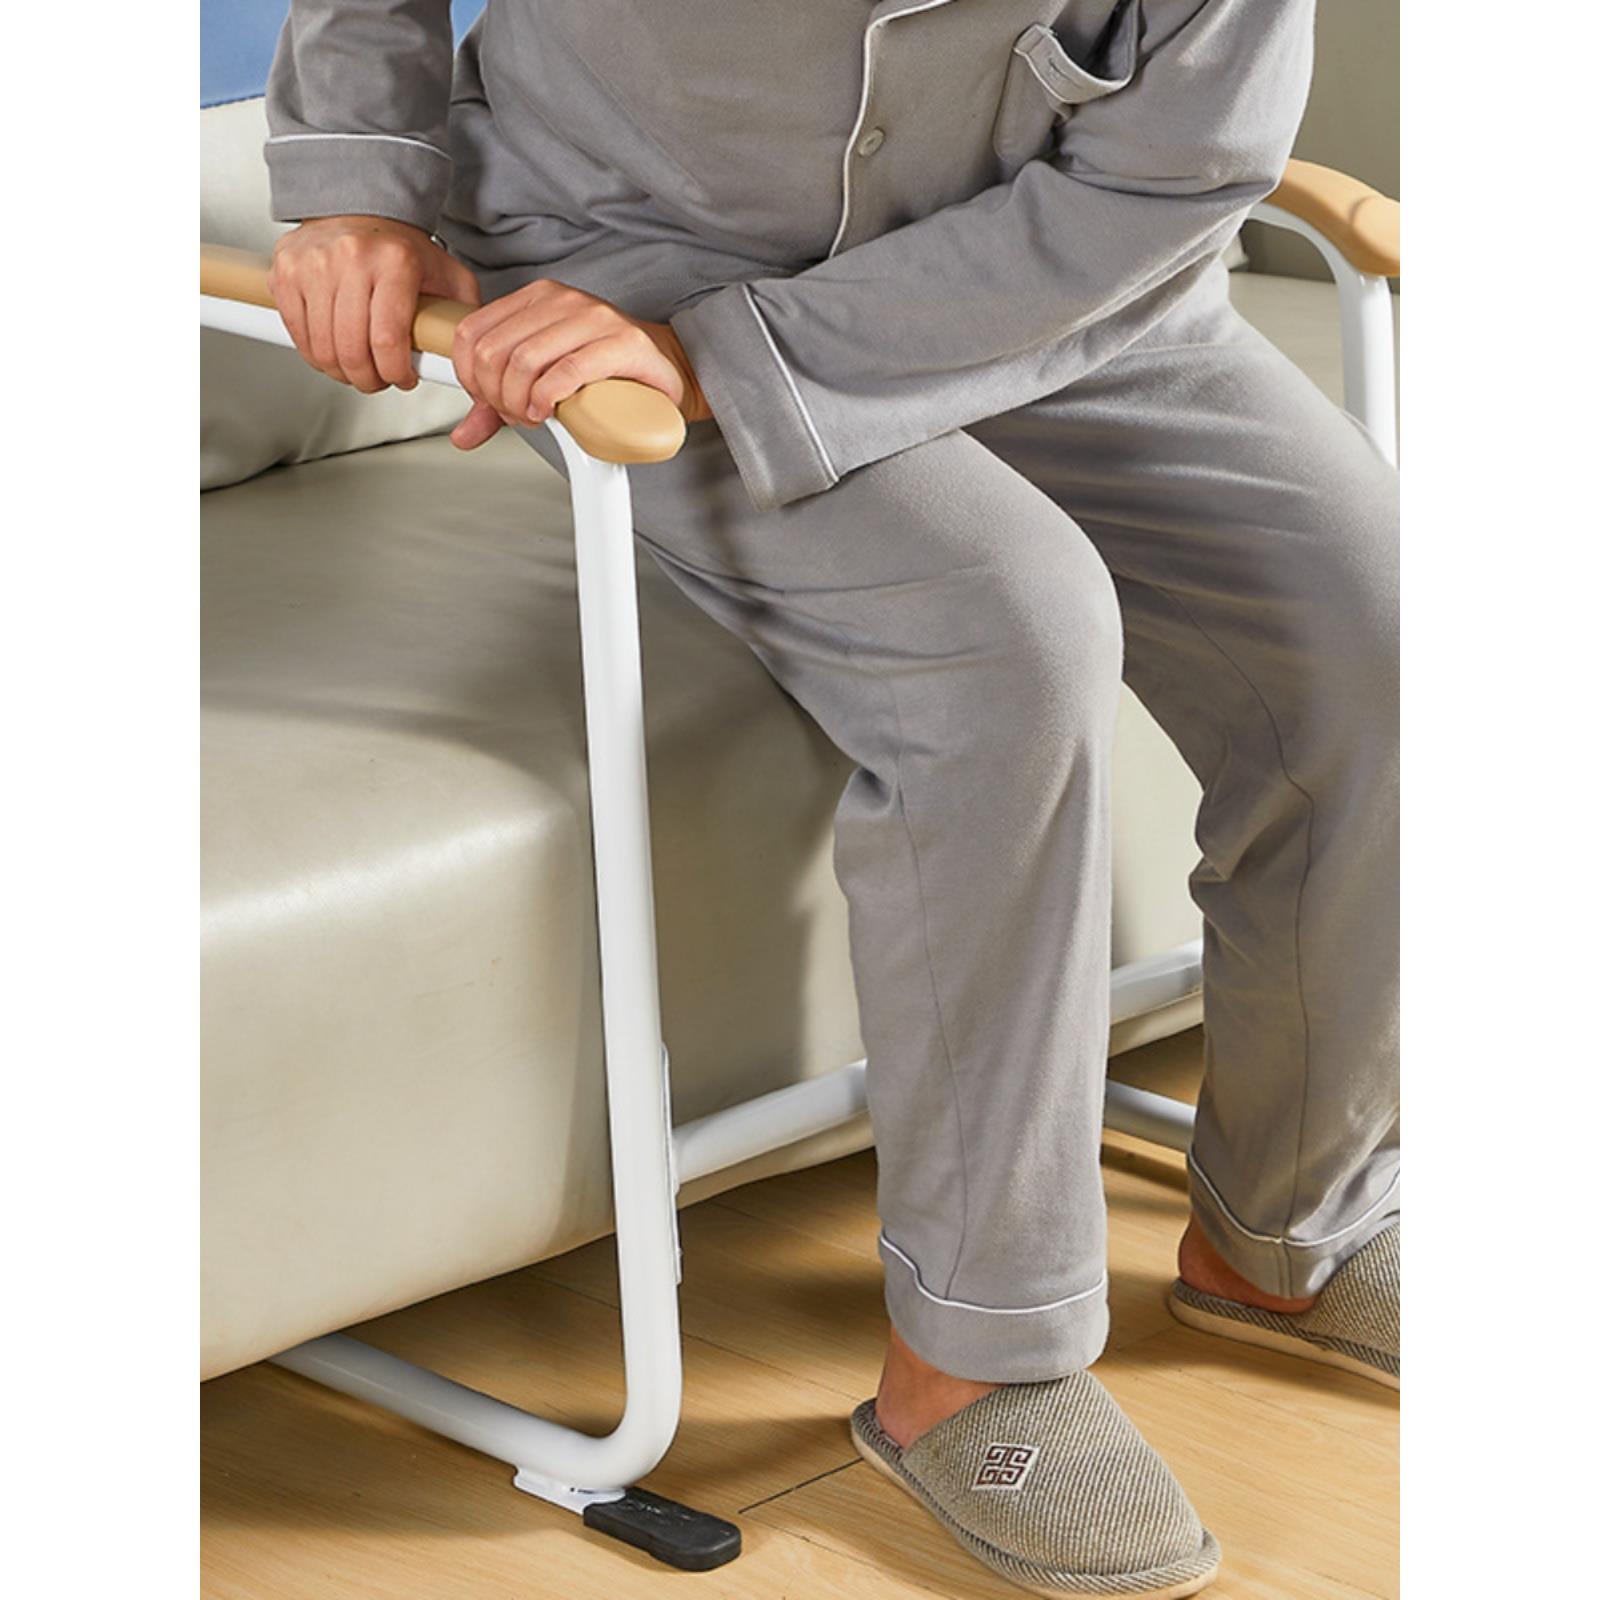 扶手栏杆老人家用沙发起身辅助器老年人马桶安全厕所防滑助力架子